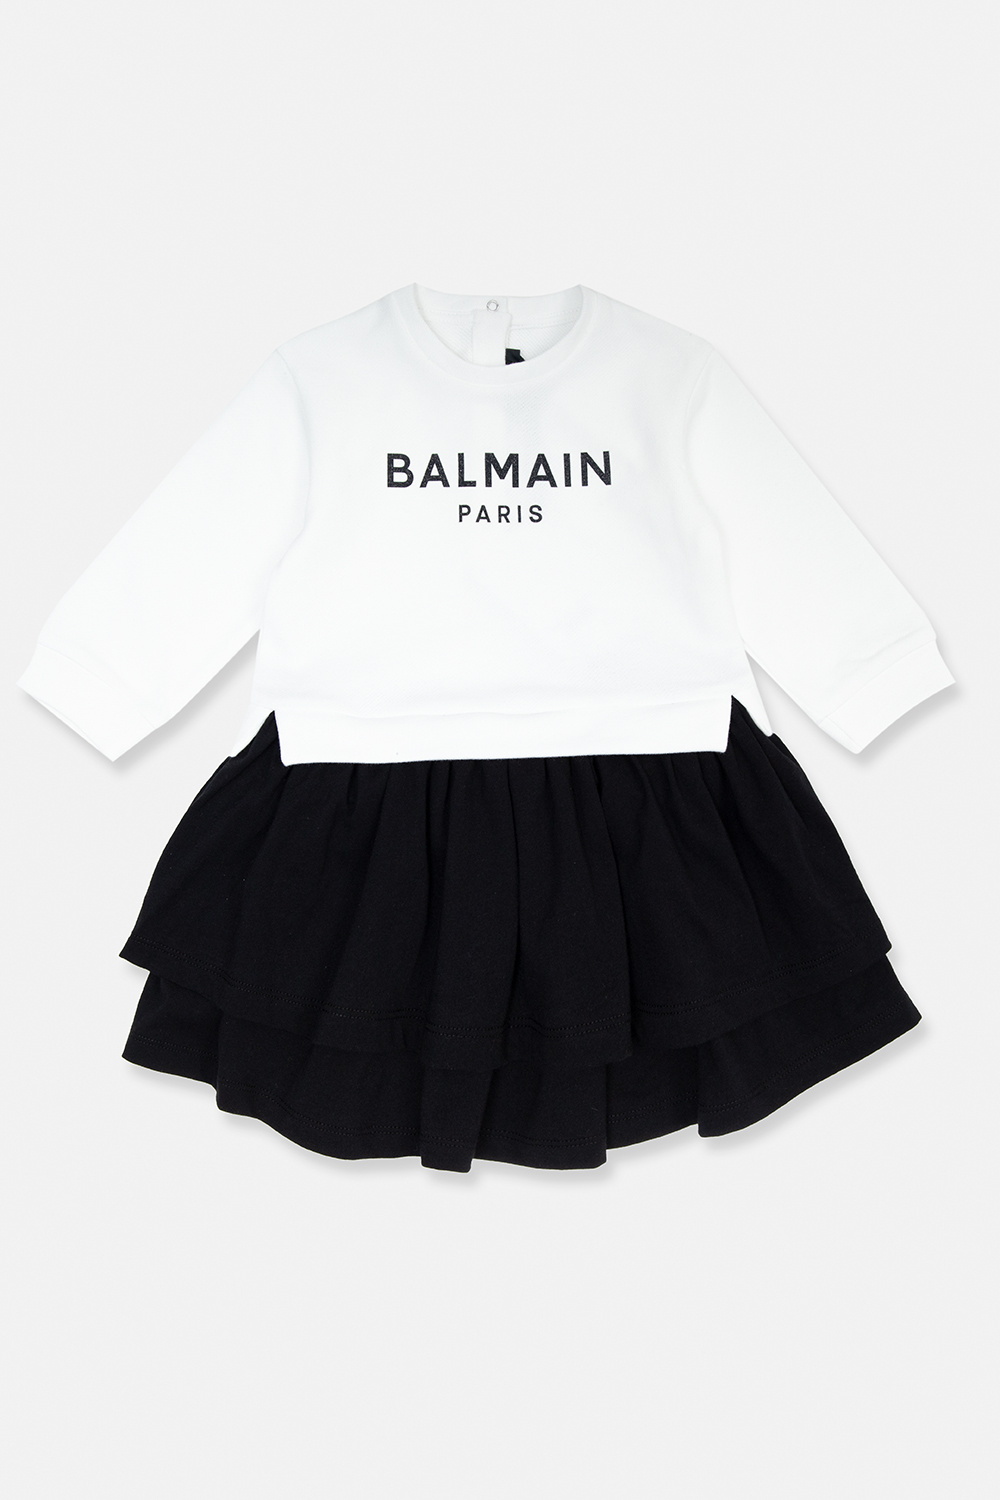 balmain Top Kids Dress with logo